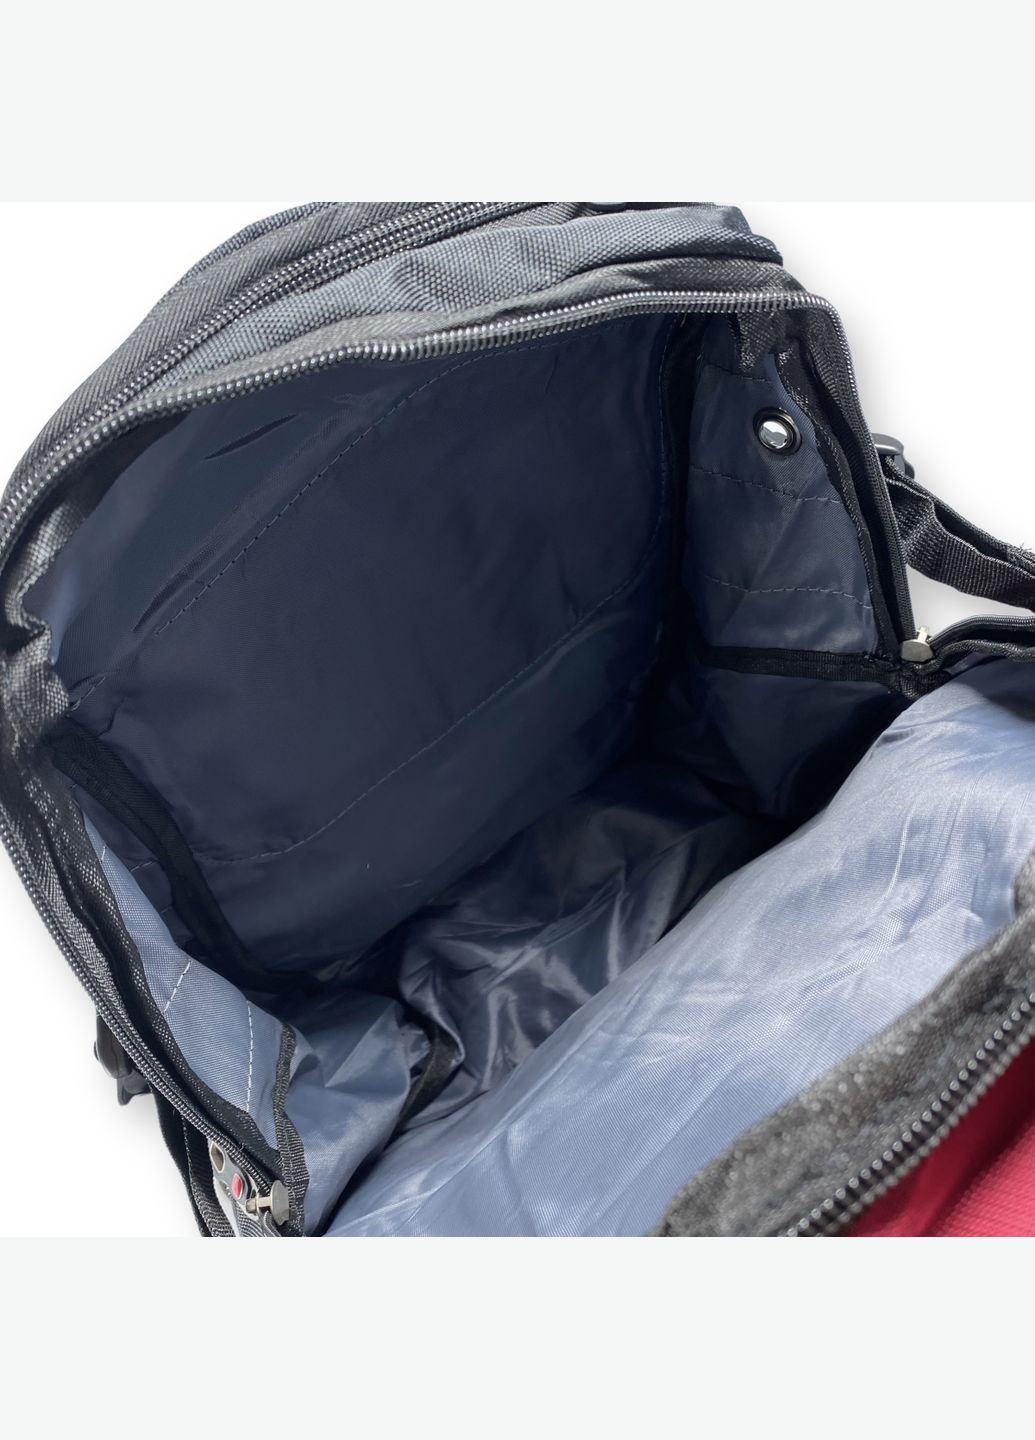 Міський рюкзак з чохлом від дощу 30 л, три відділення, USB розʼєм, розмір: 45*30*20 см, бордовий SWISSGEAR (284338093)